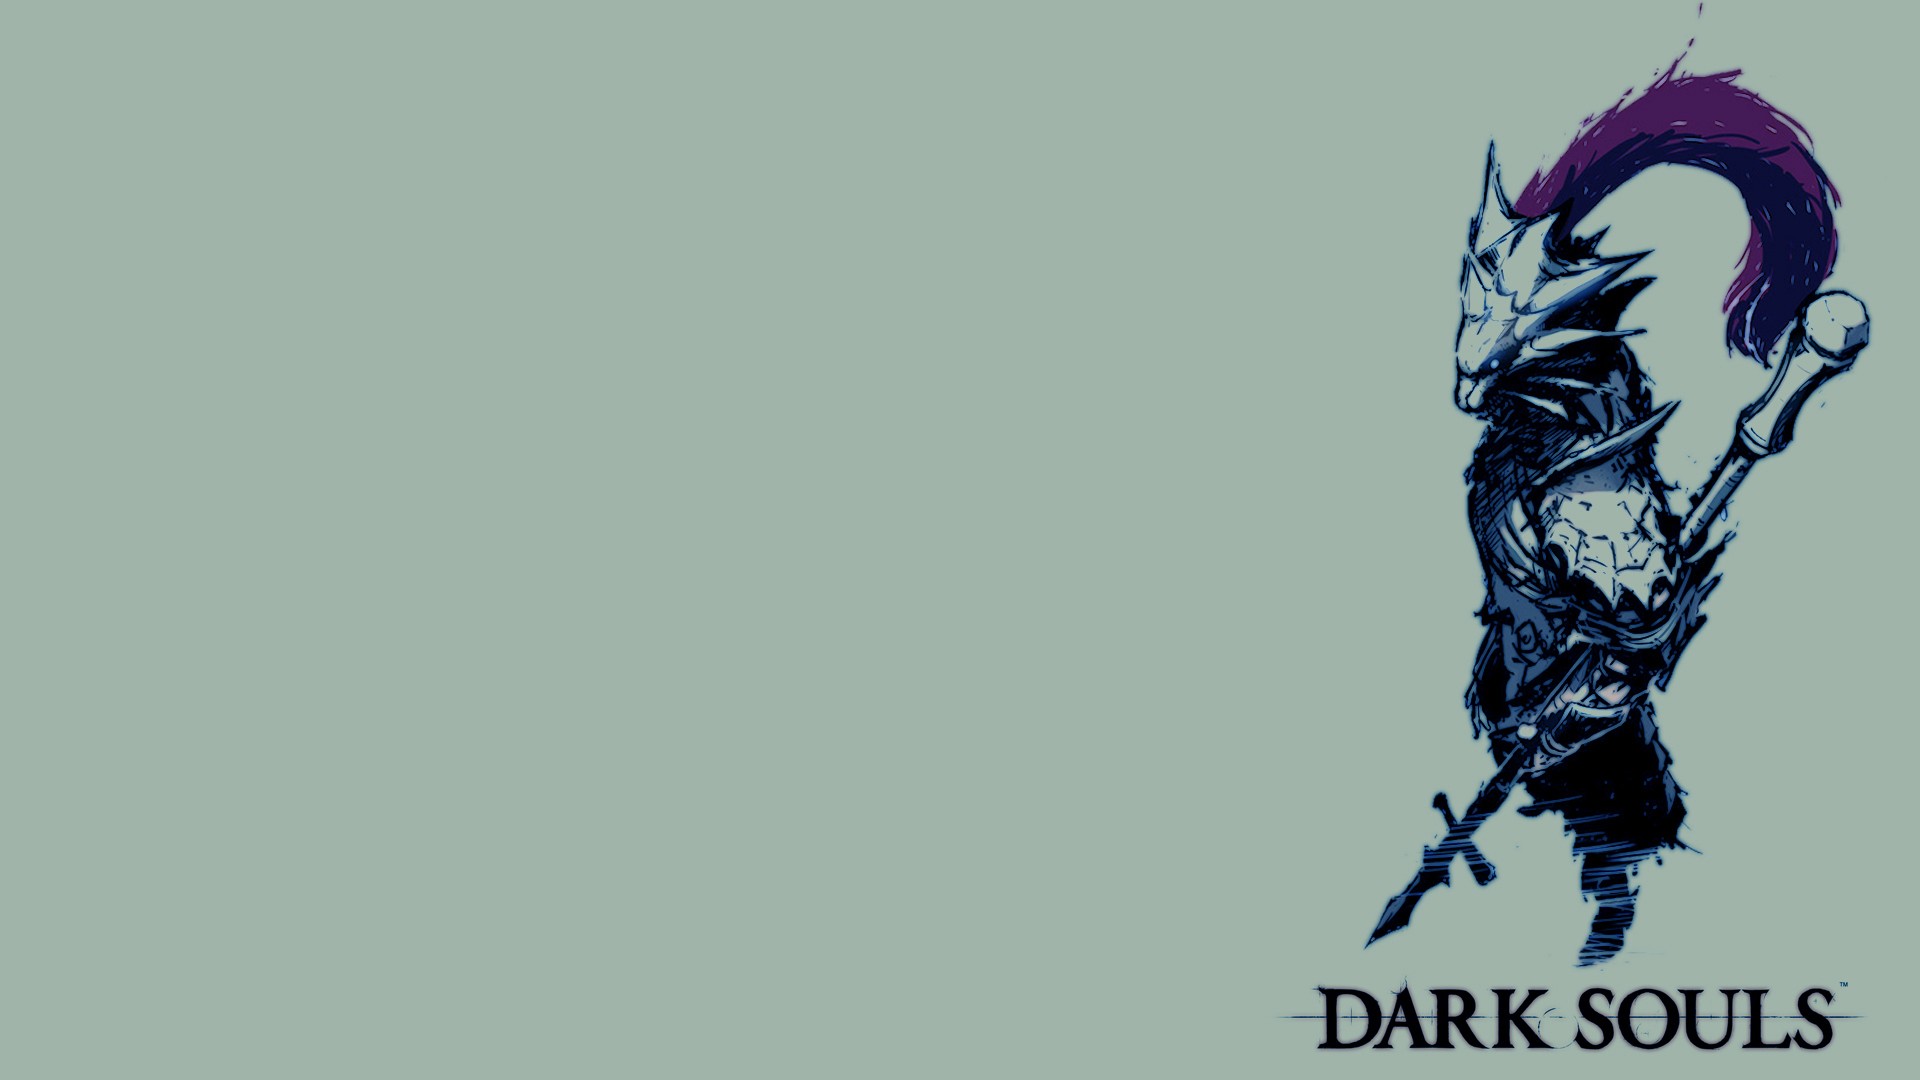 General 1920x1080 Dark Souls Dark Souls II video games video game art simple background